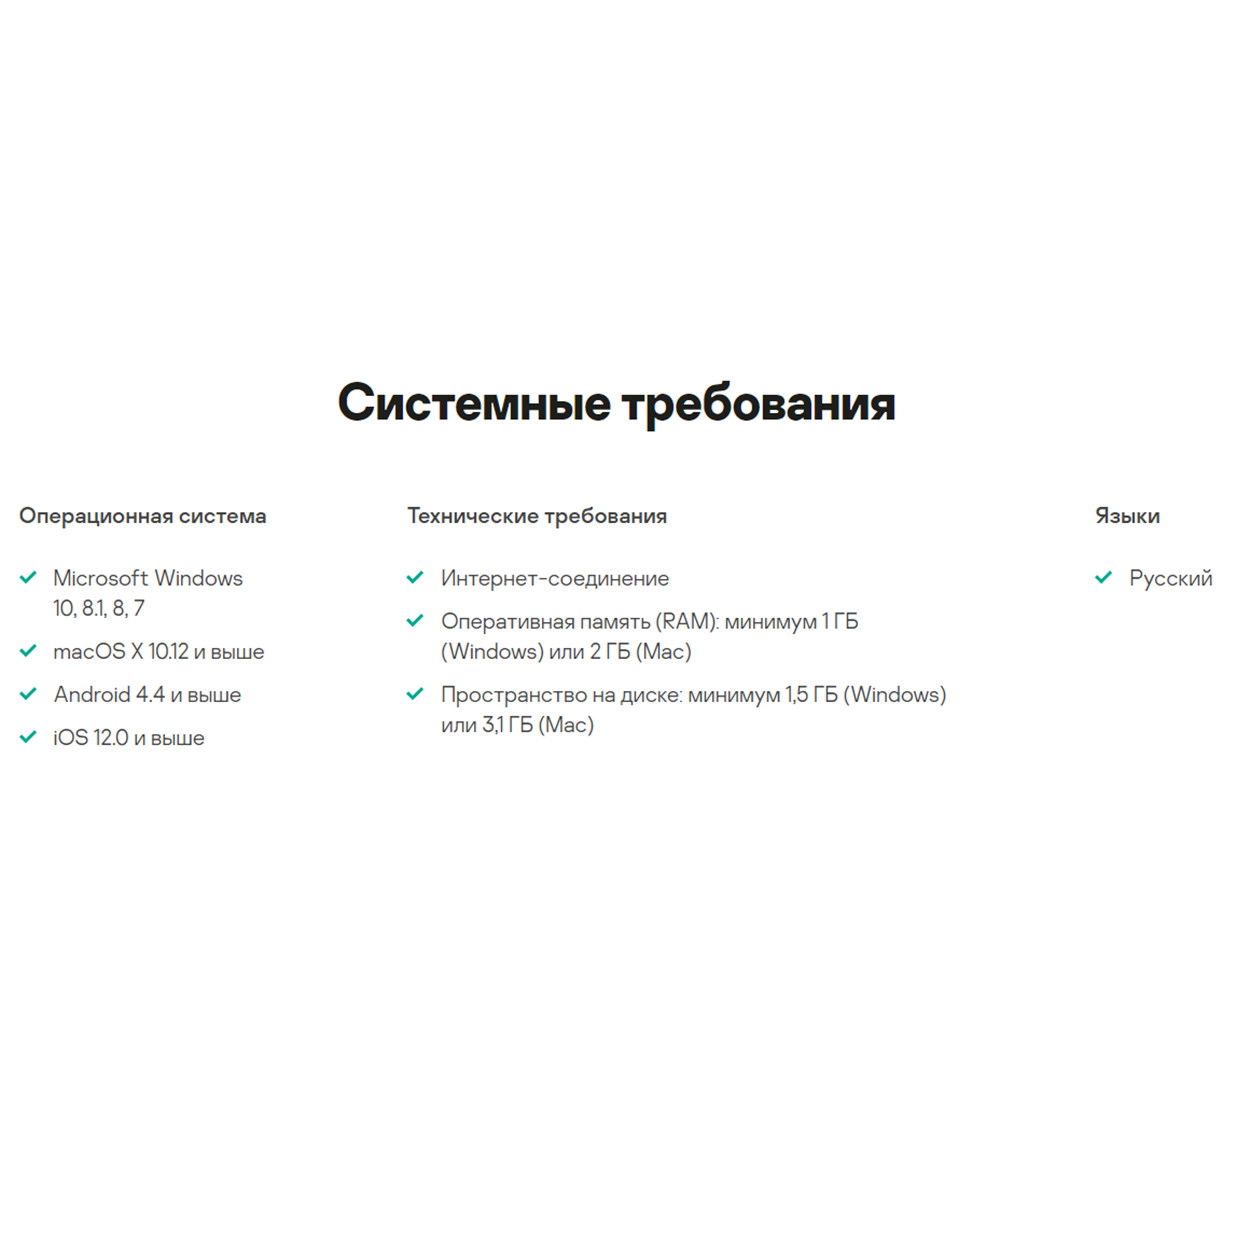 Kaspersky Total Security: 2 dev. 1 year (RU) 0%💳